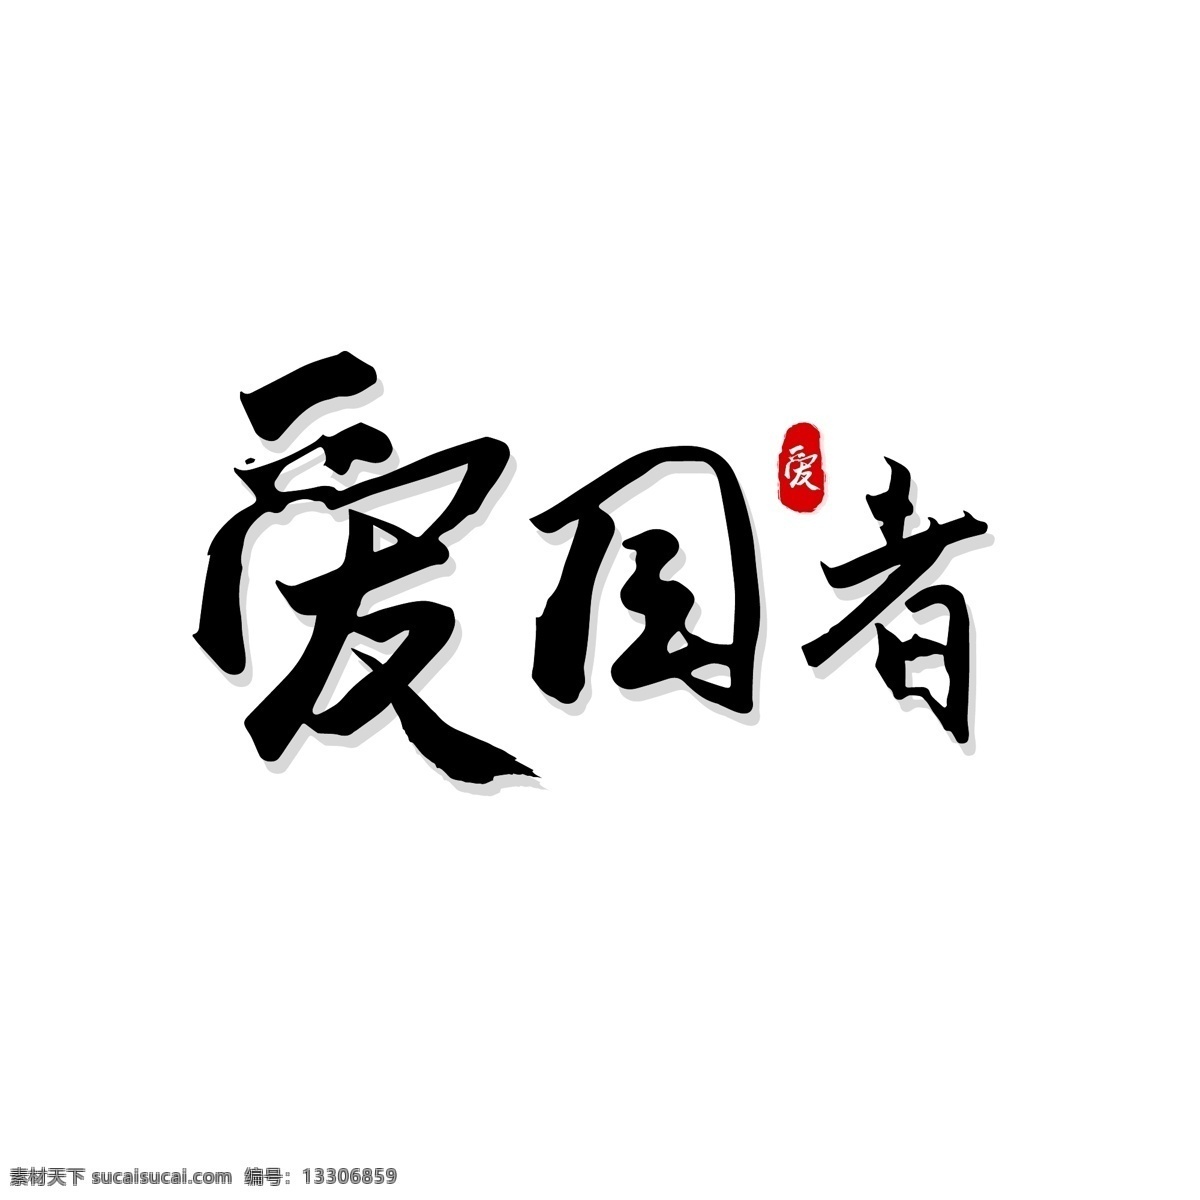 爱国者 手写体 字体 爱国 国家 手写字体 毛笔字体 字体设计 中国 艺术字